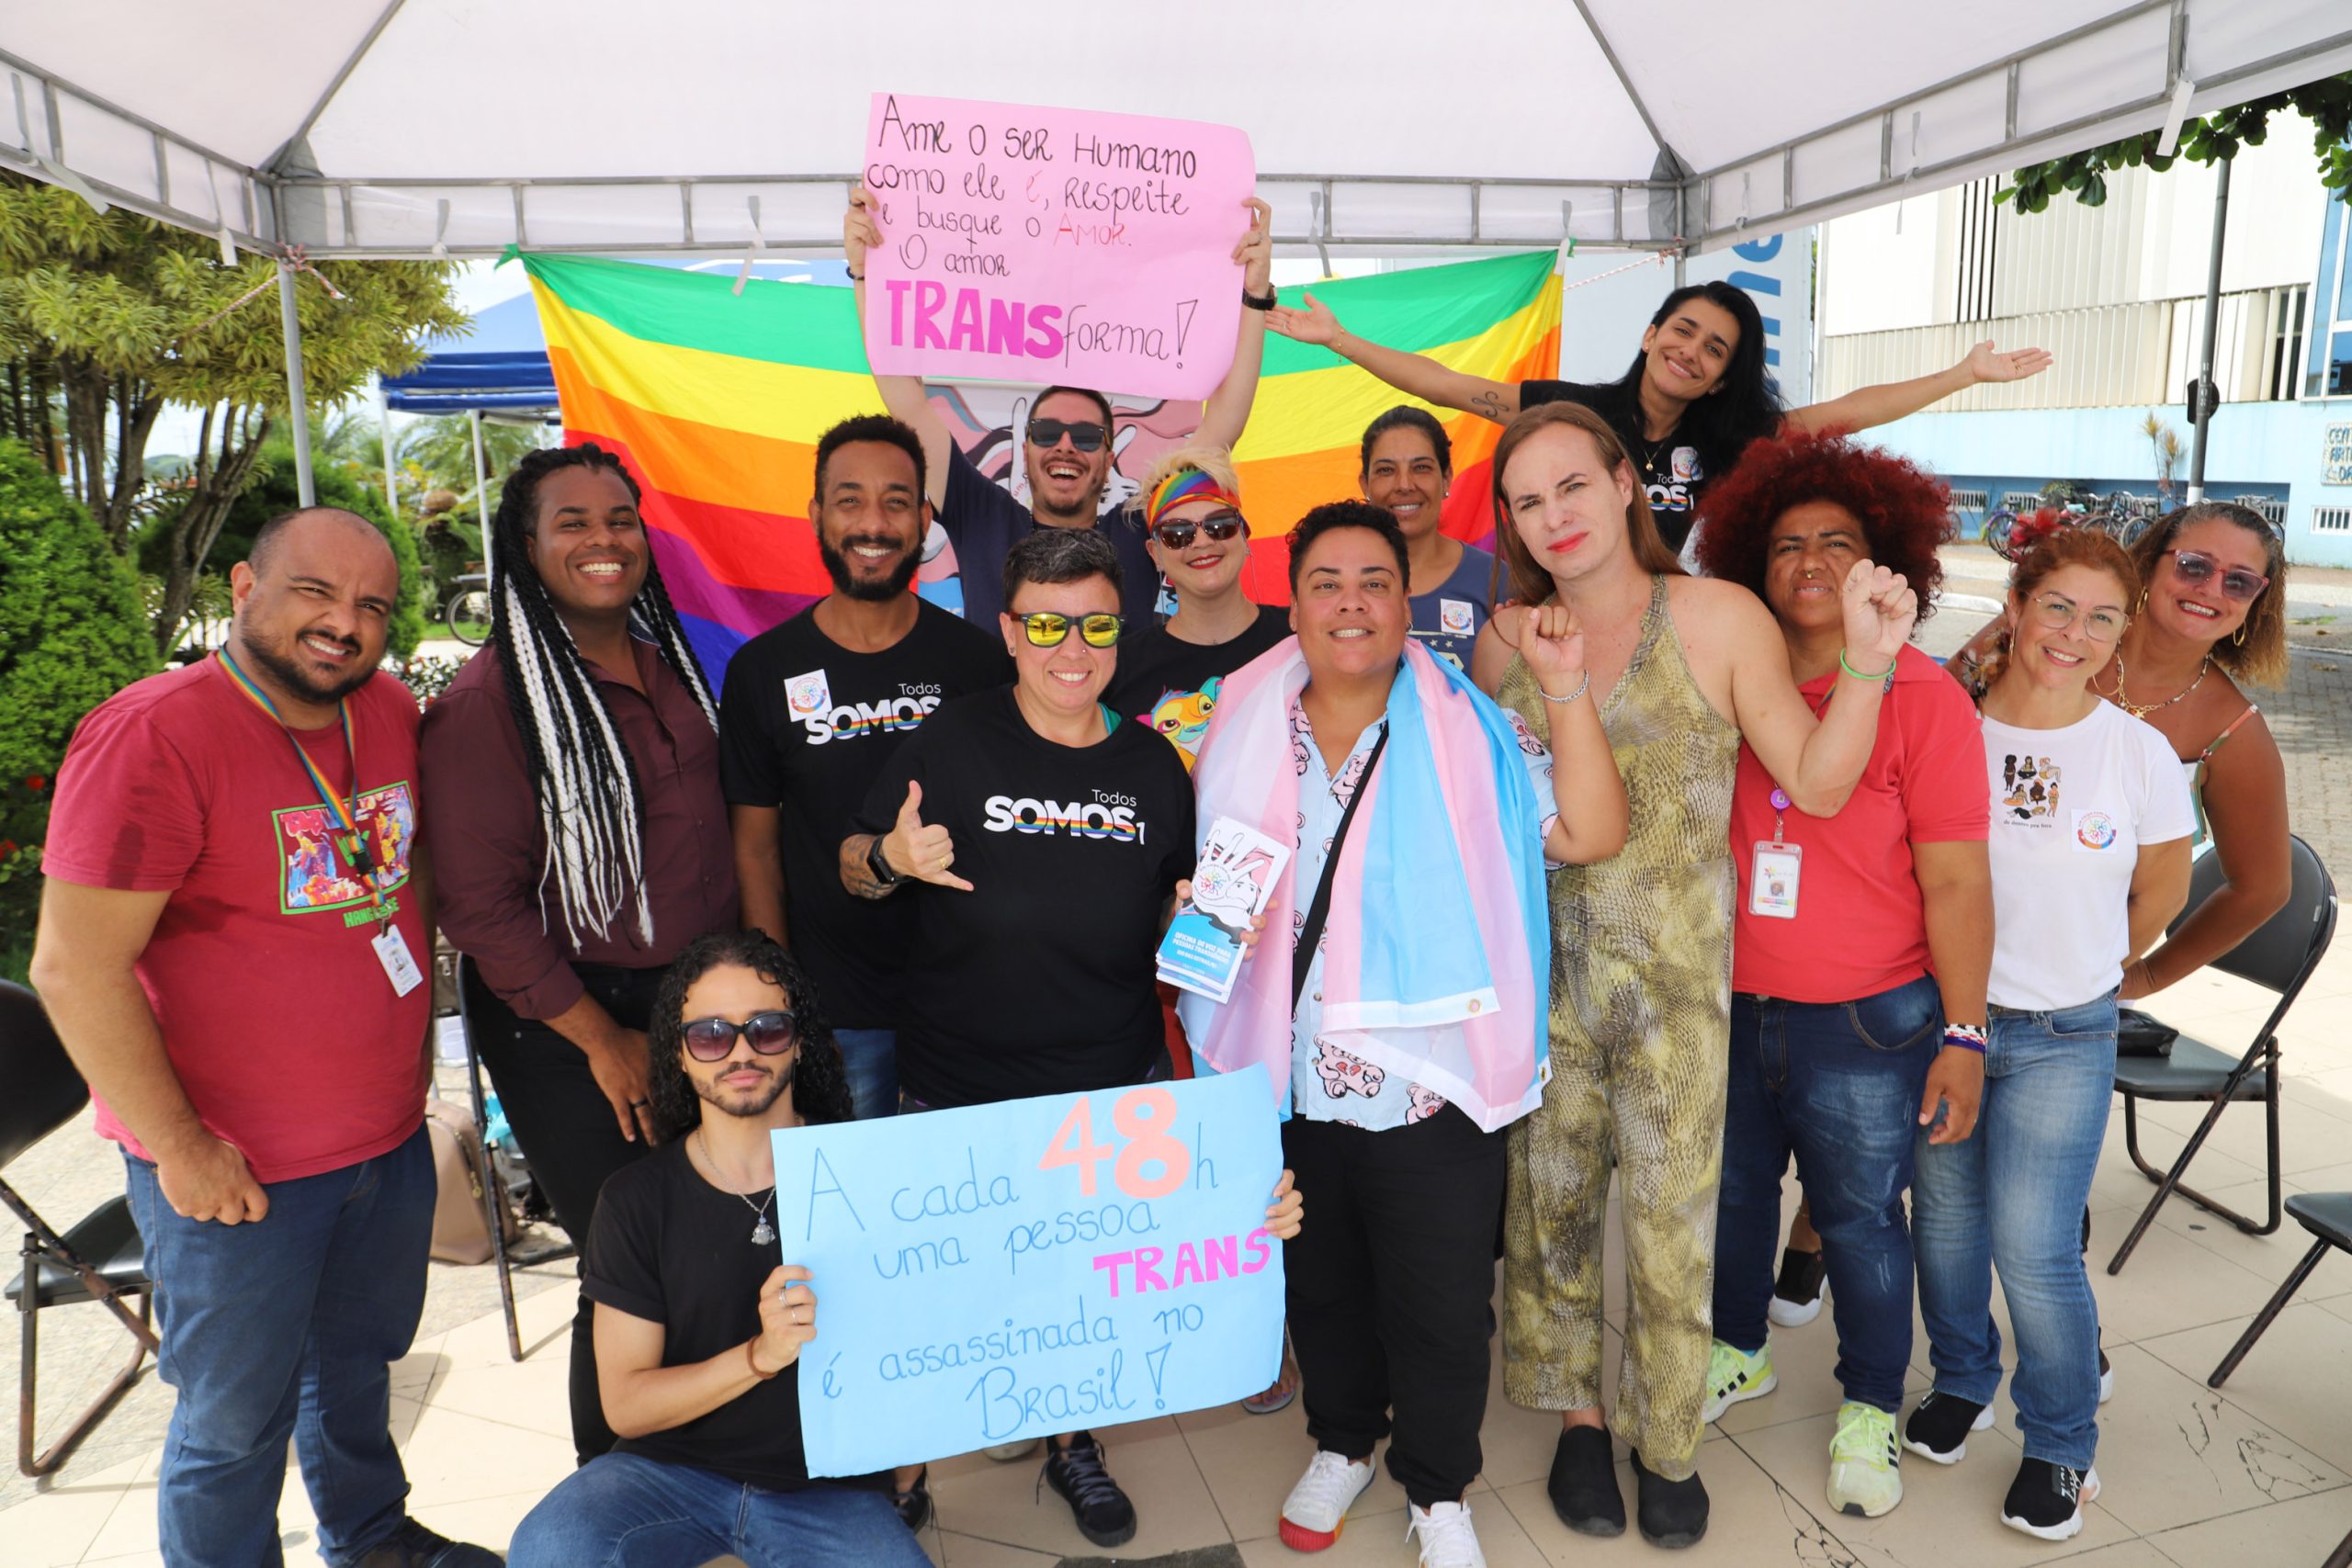 Rio das Ostras mobiliza população em torno do respeito e visibilidade Trans